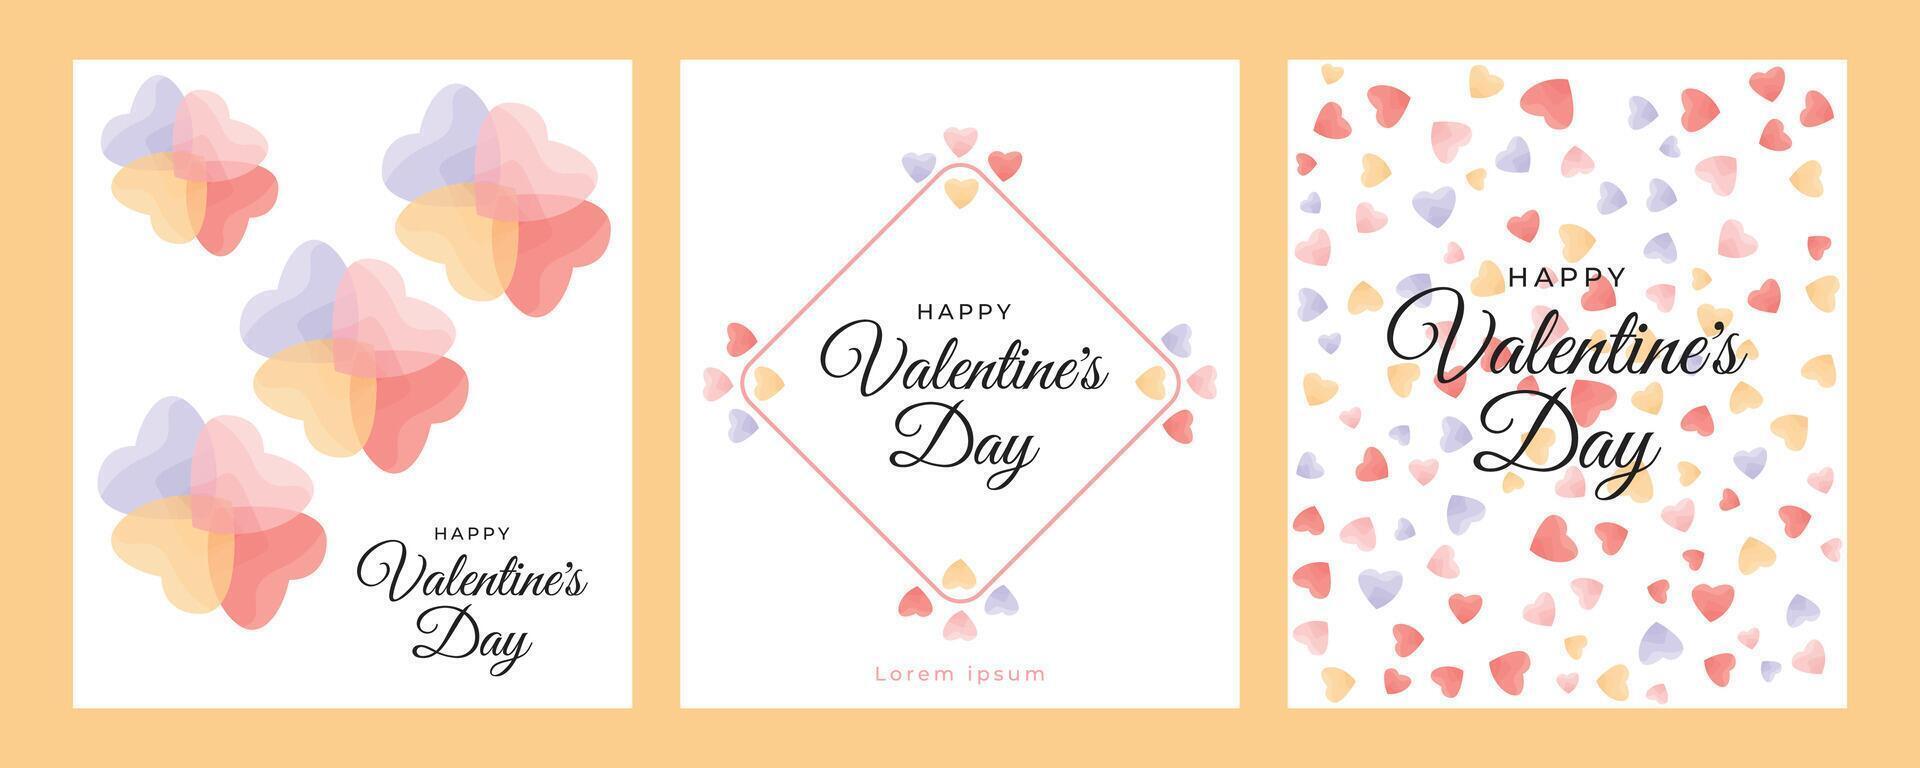 glücklich Valentinstag Tag abstrakt Gruß Poster Design vektor